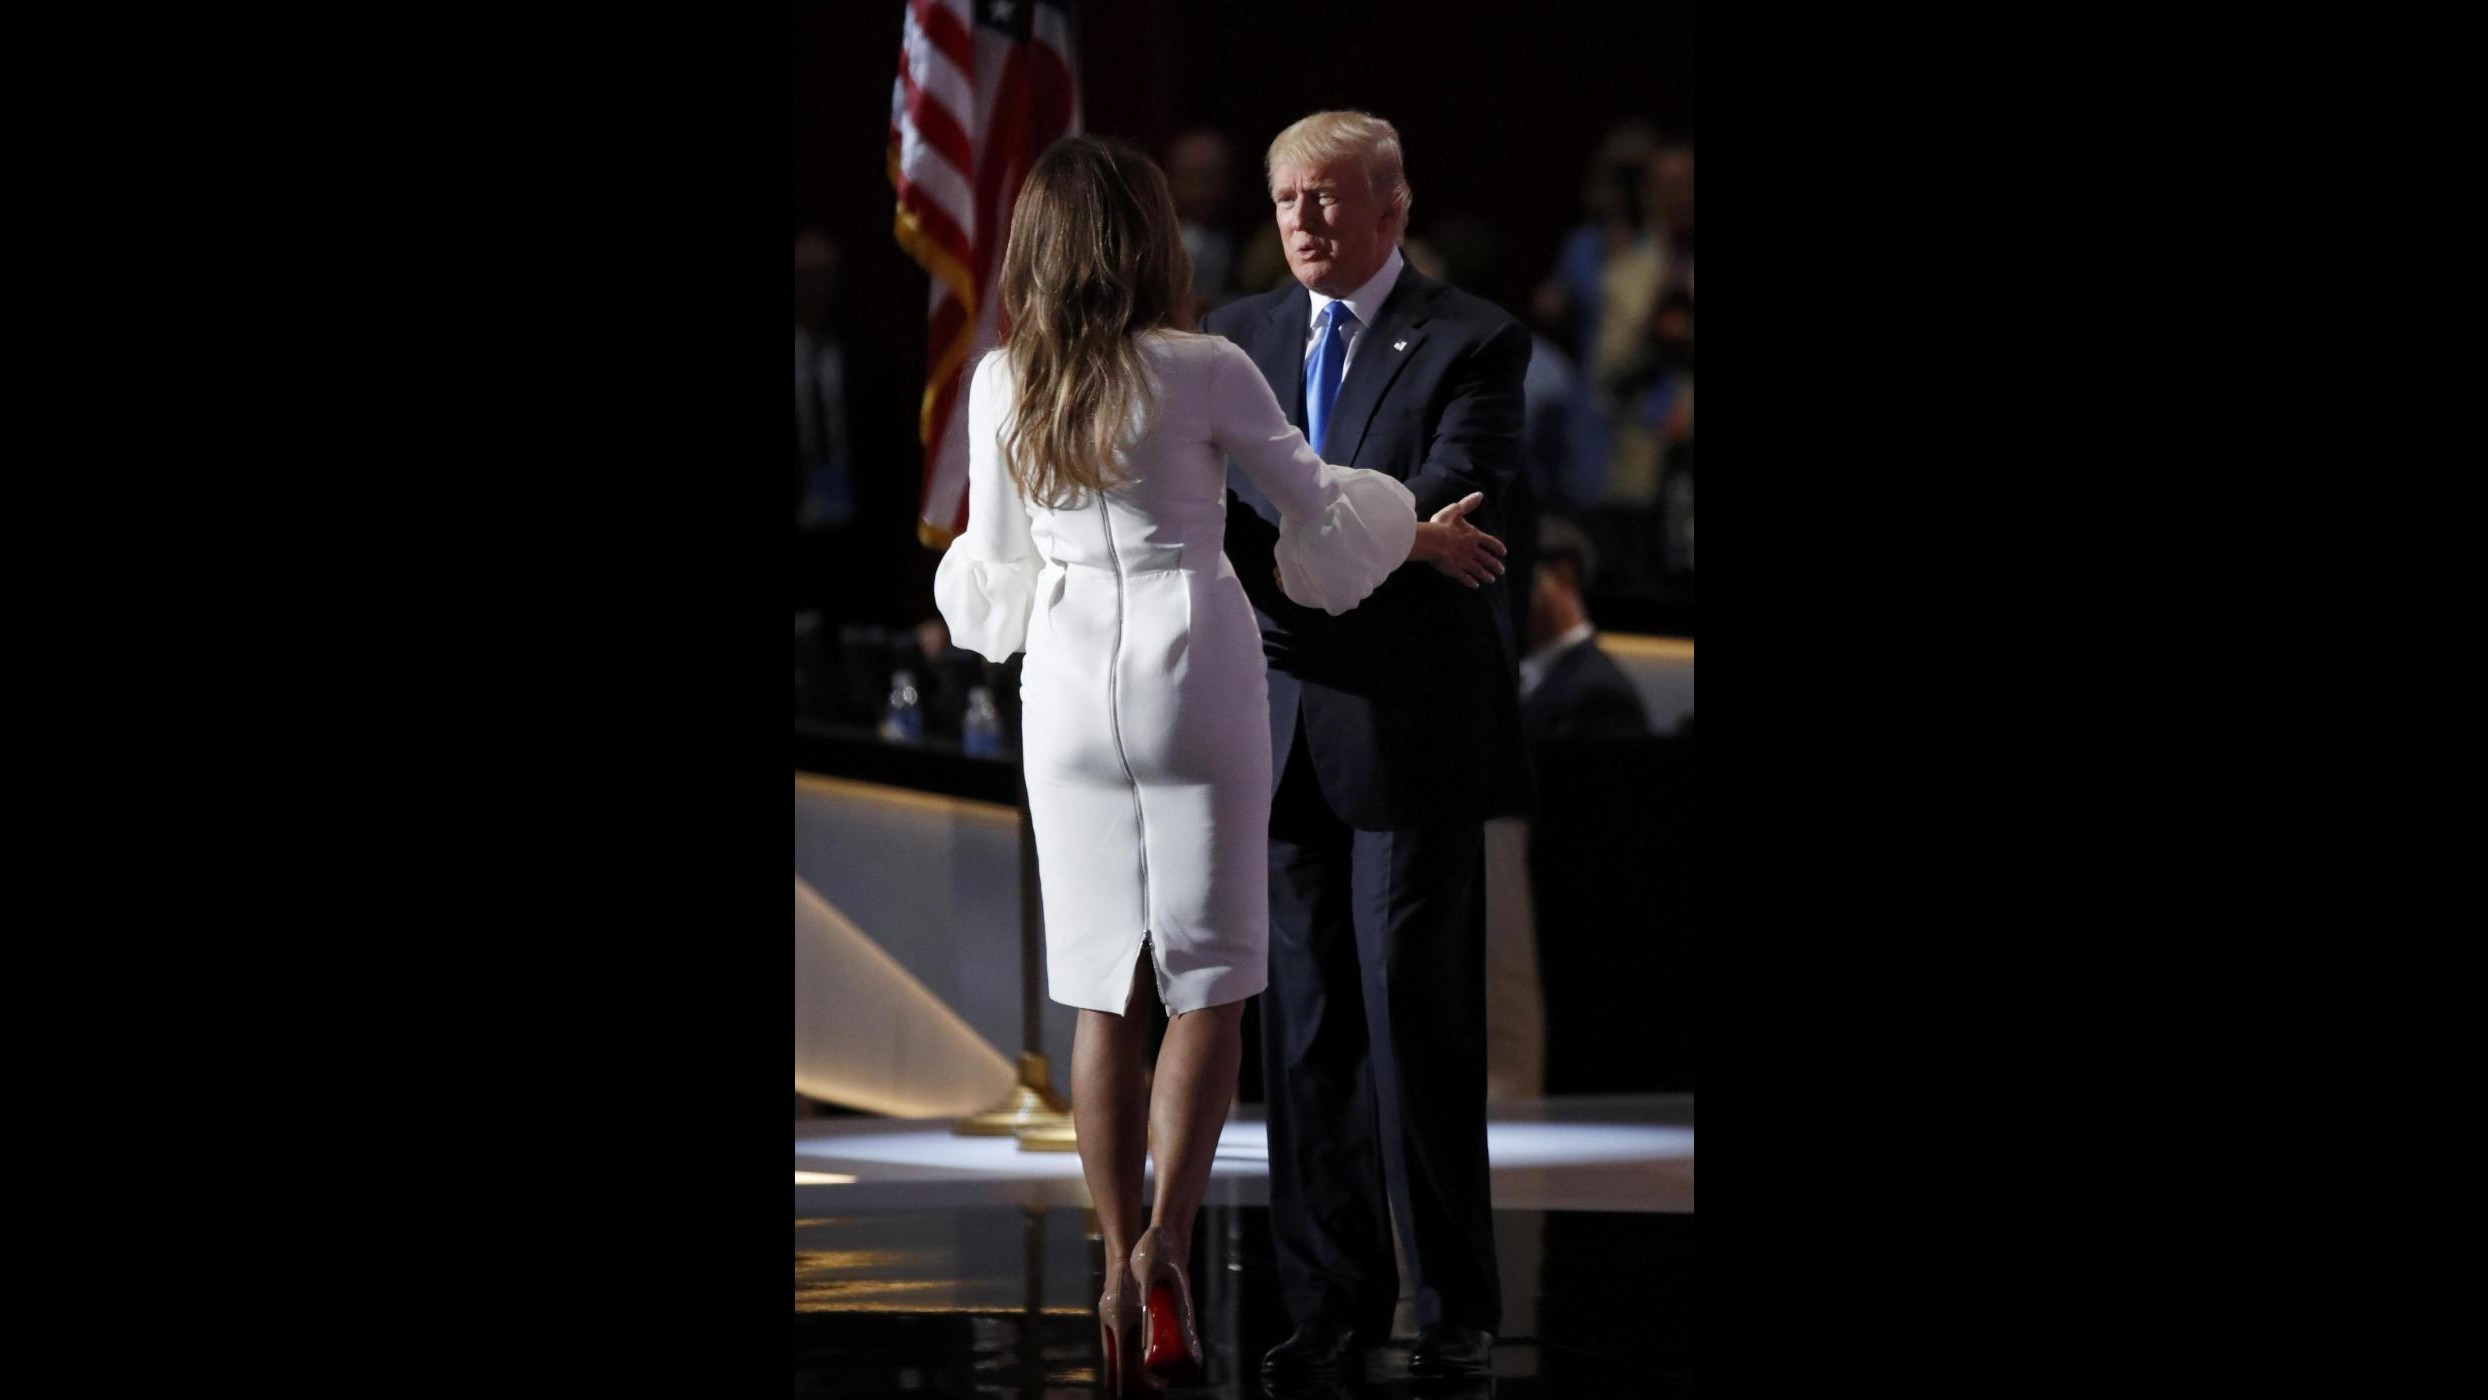 FOTO Usa, Donald Trump lascia la scena alla moglie Melania